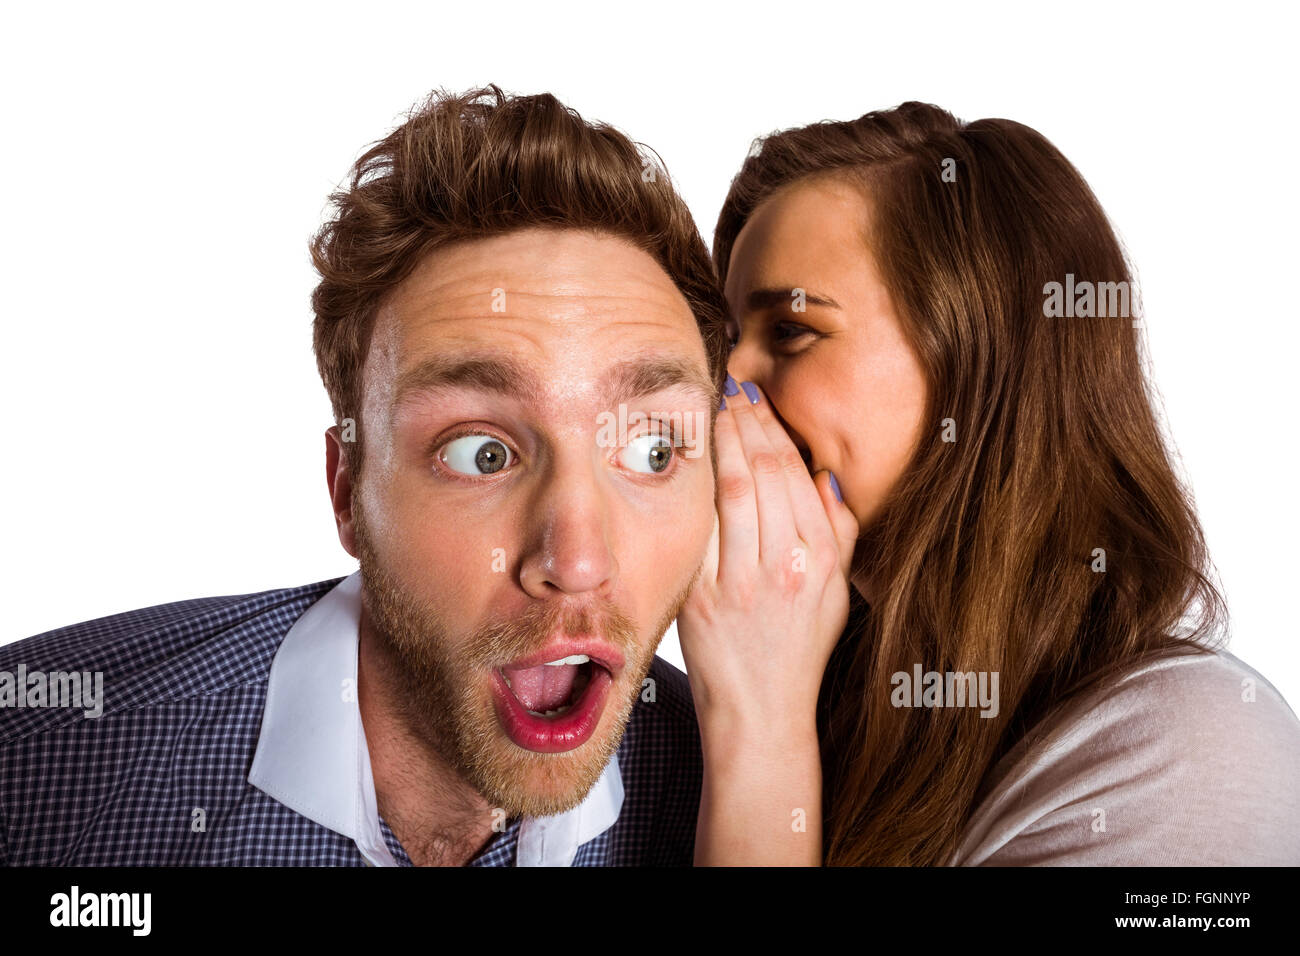 Woman whispering secret into friends ear Stock Photo